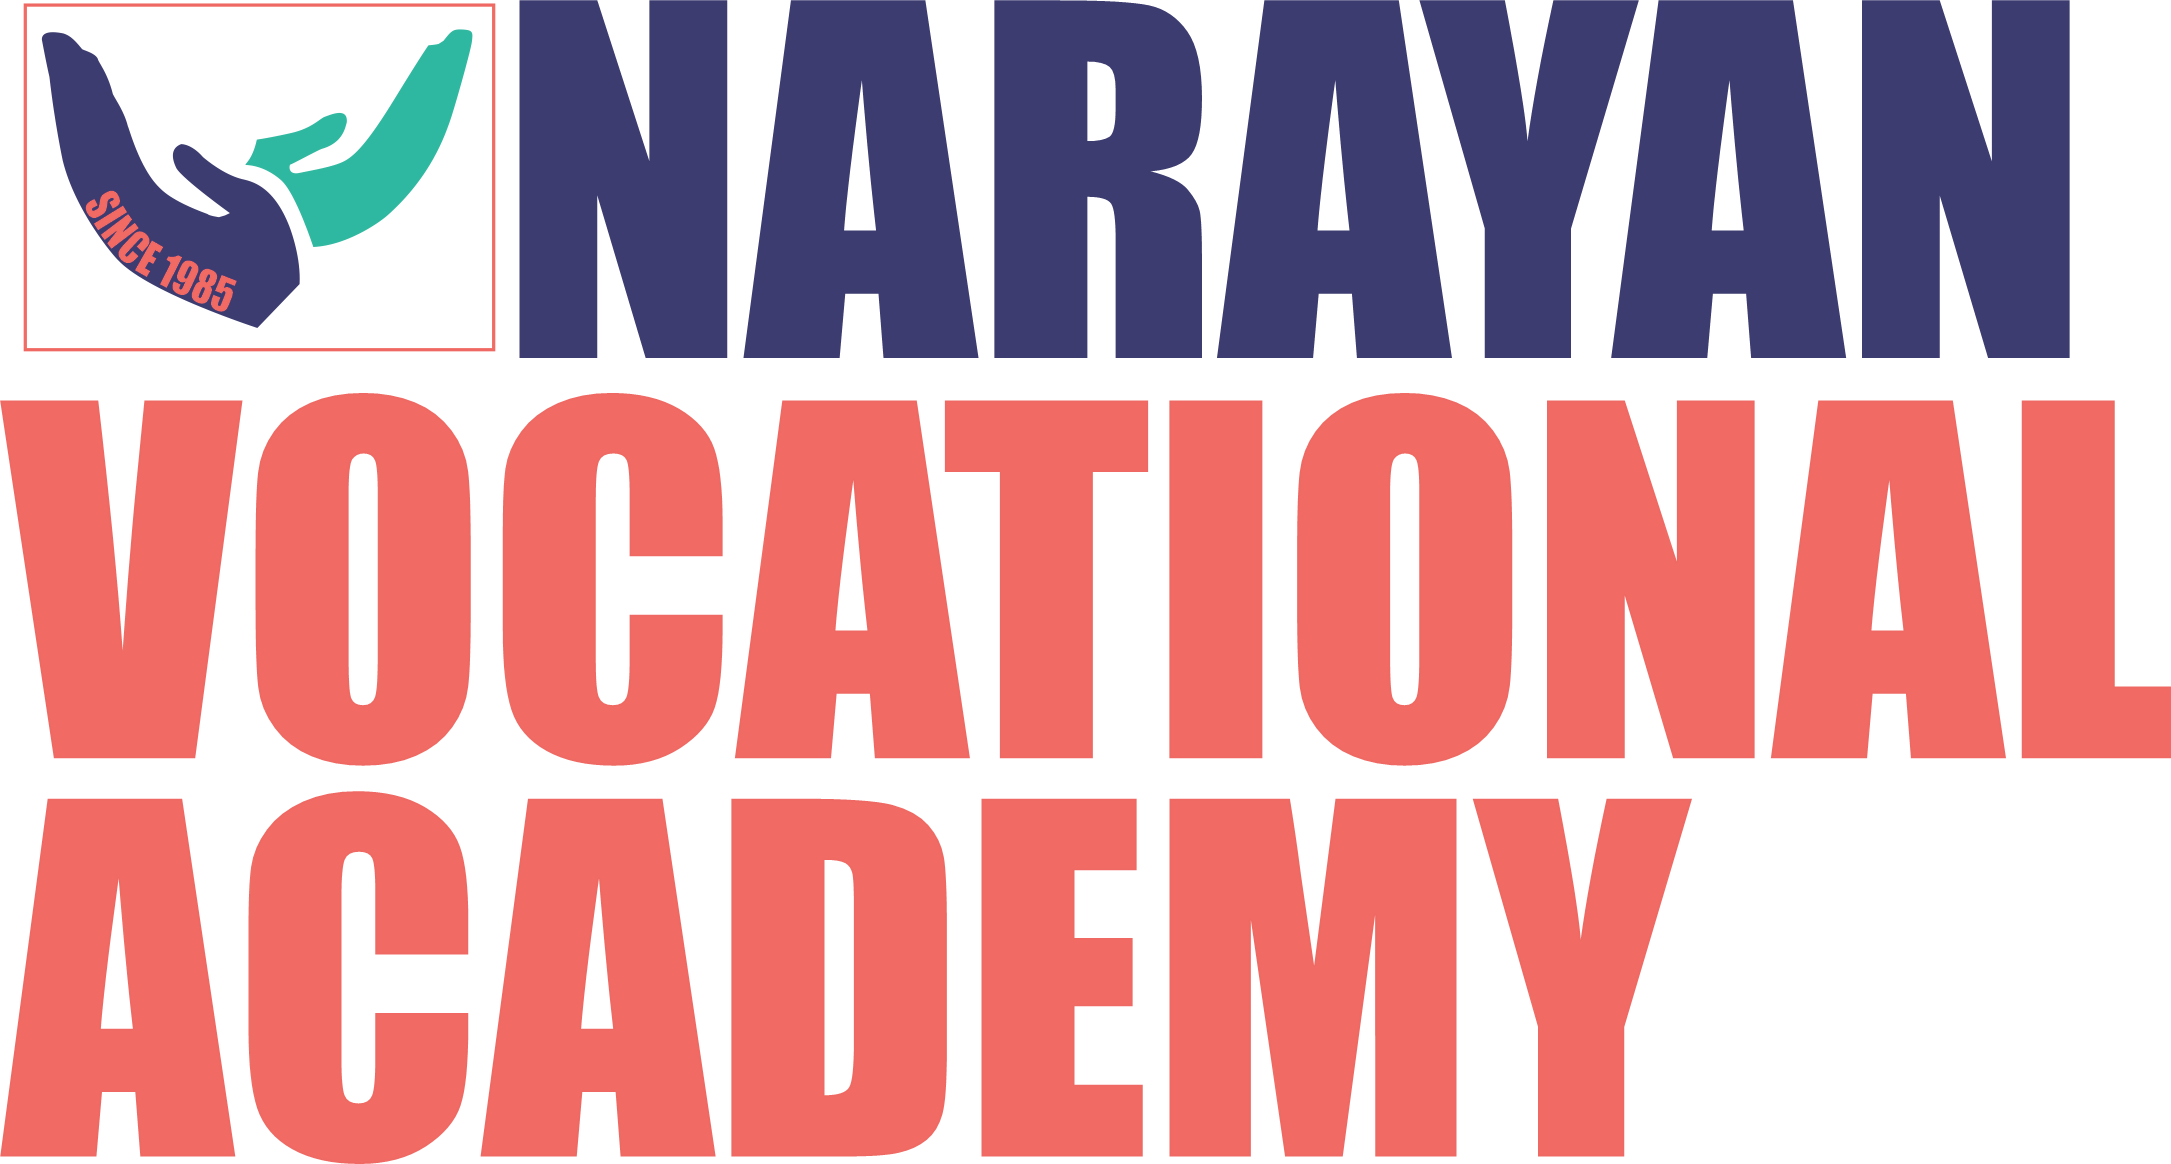 Narayan Vocational Academy Logo